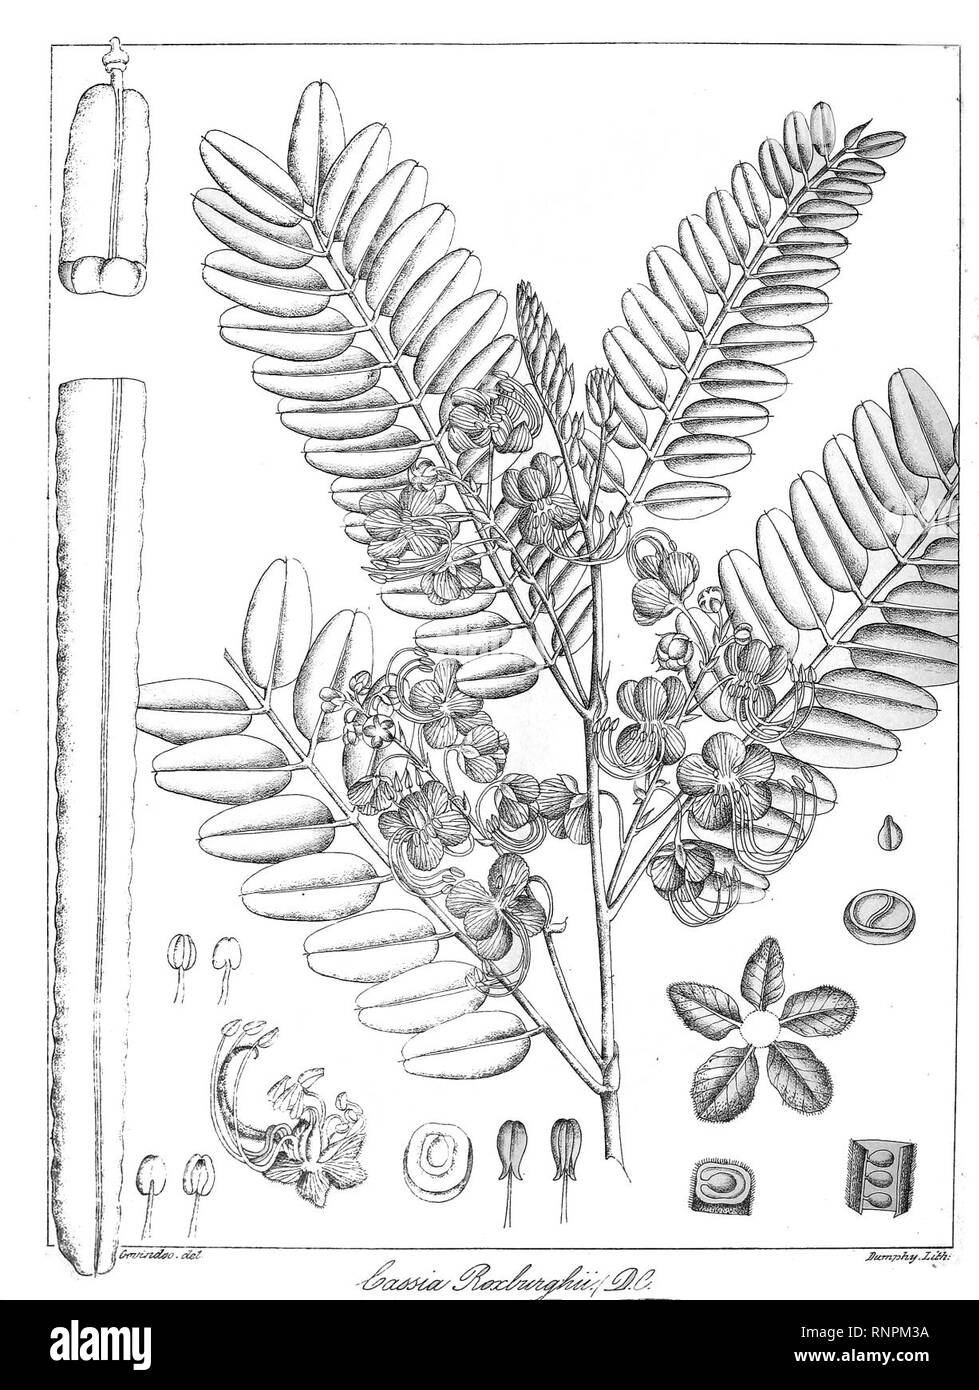 Cassia roxburghii Govindoo. Stock Photo